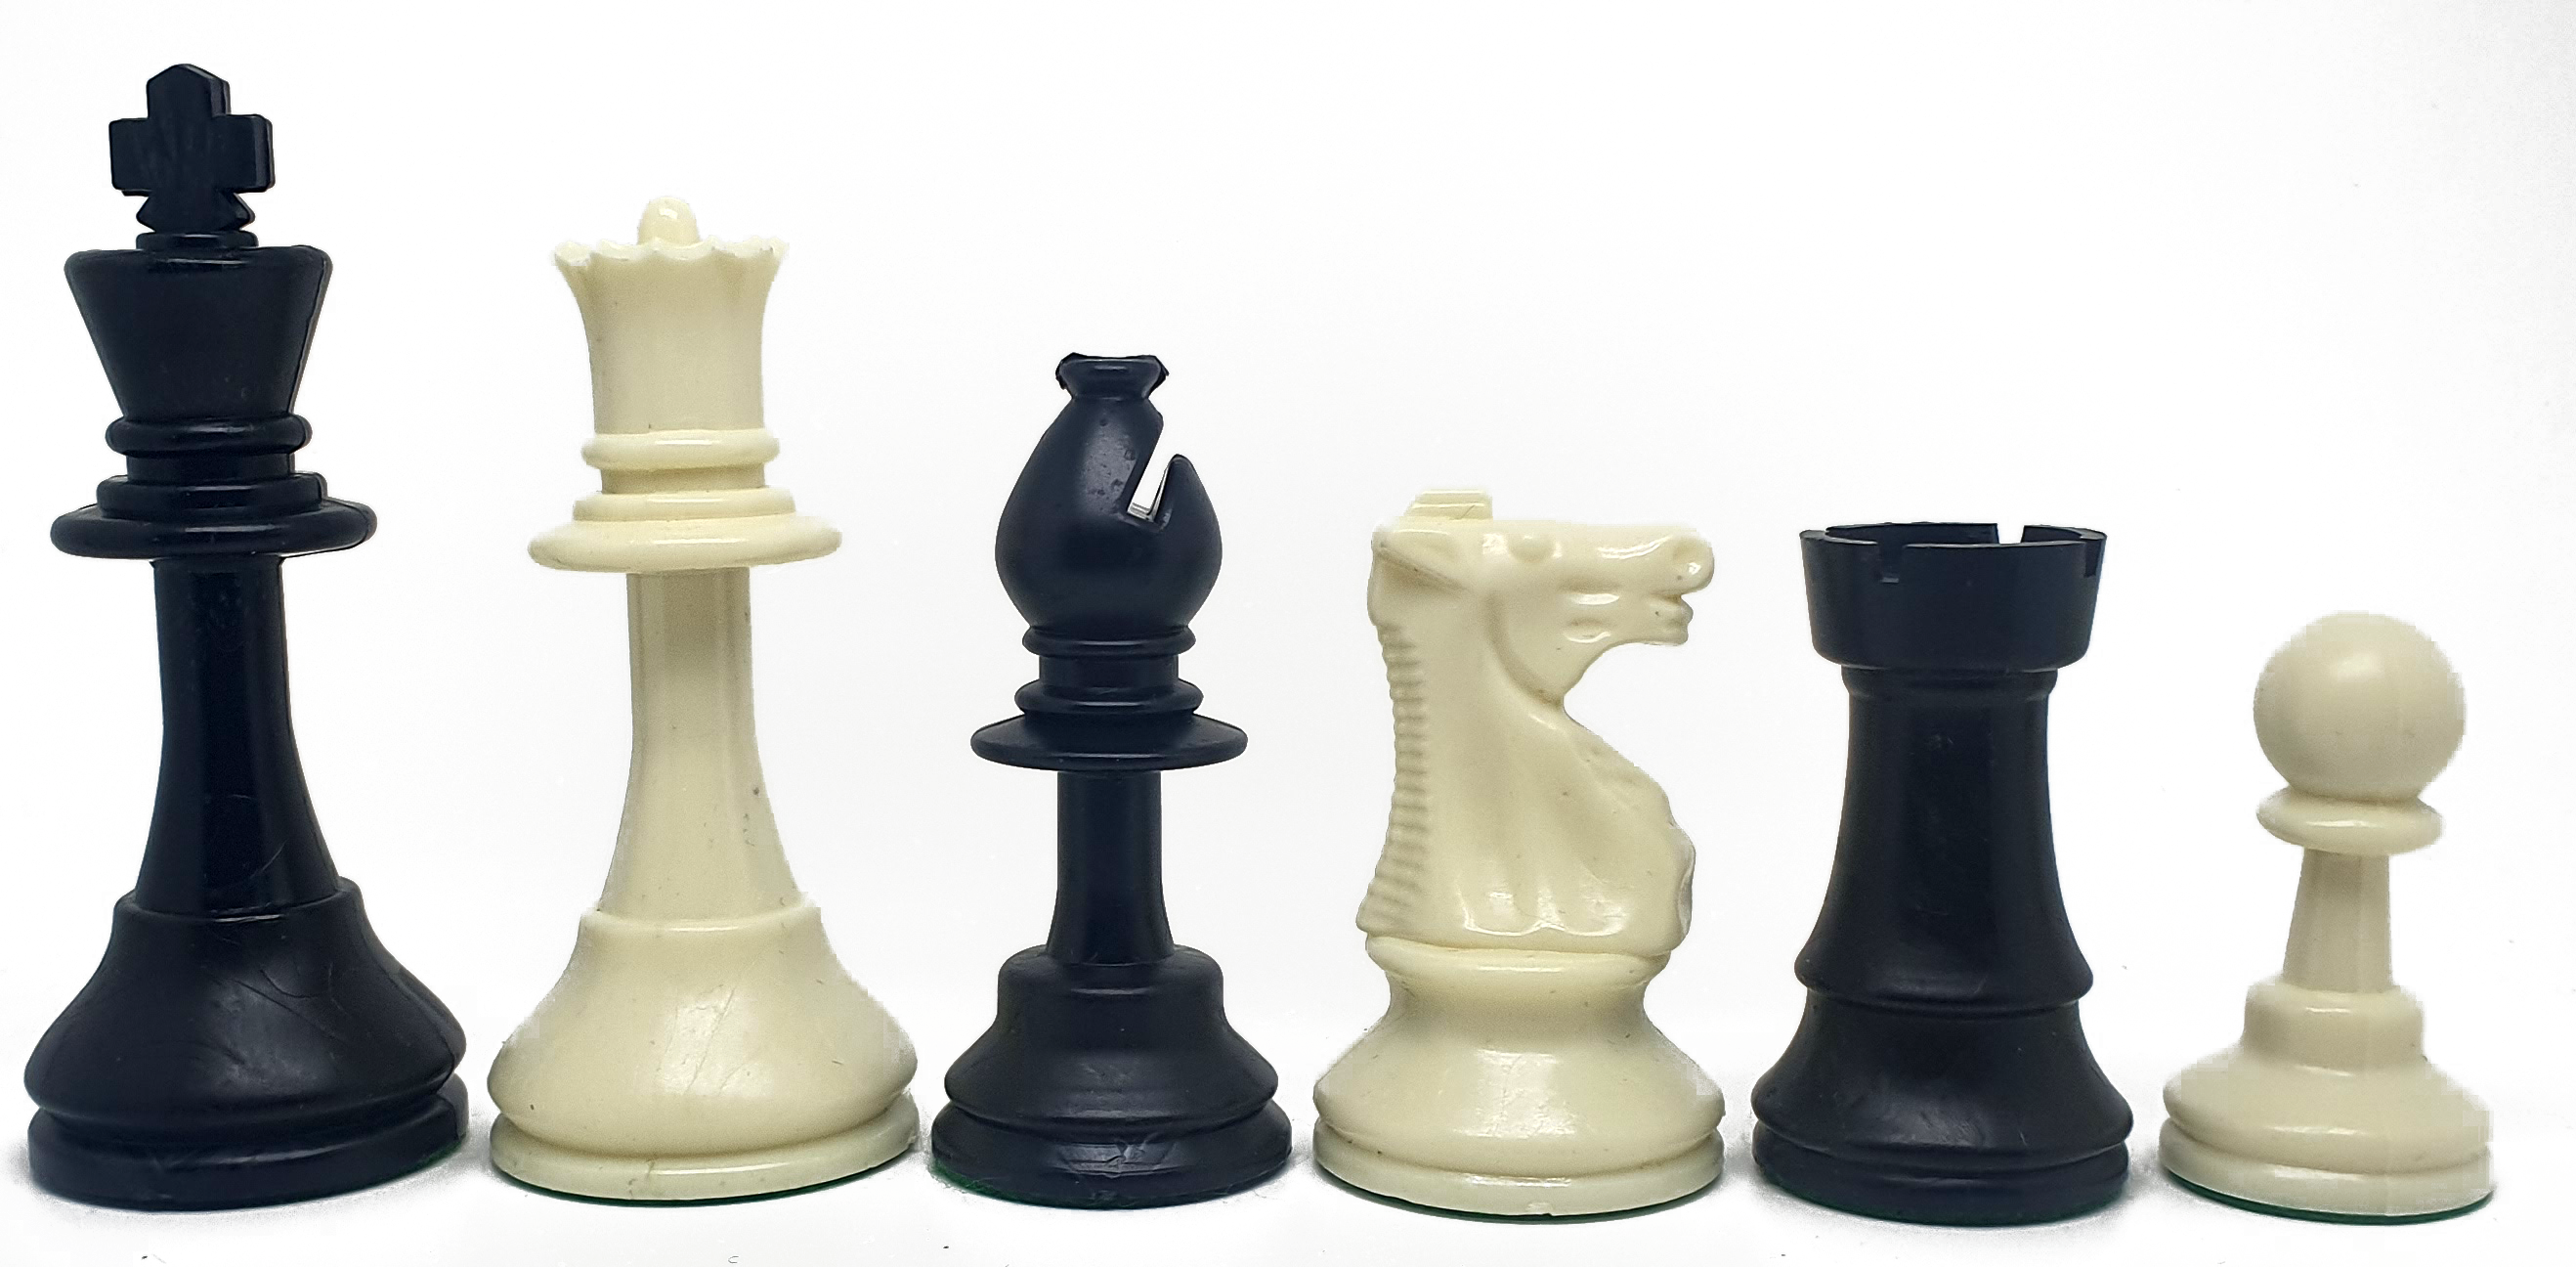 Piezas de ajedrez de plástico Staunton 5 estándar. Doble dama (altura del rey: 9cm). 2100000038534